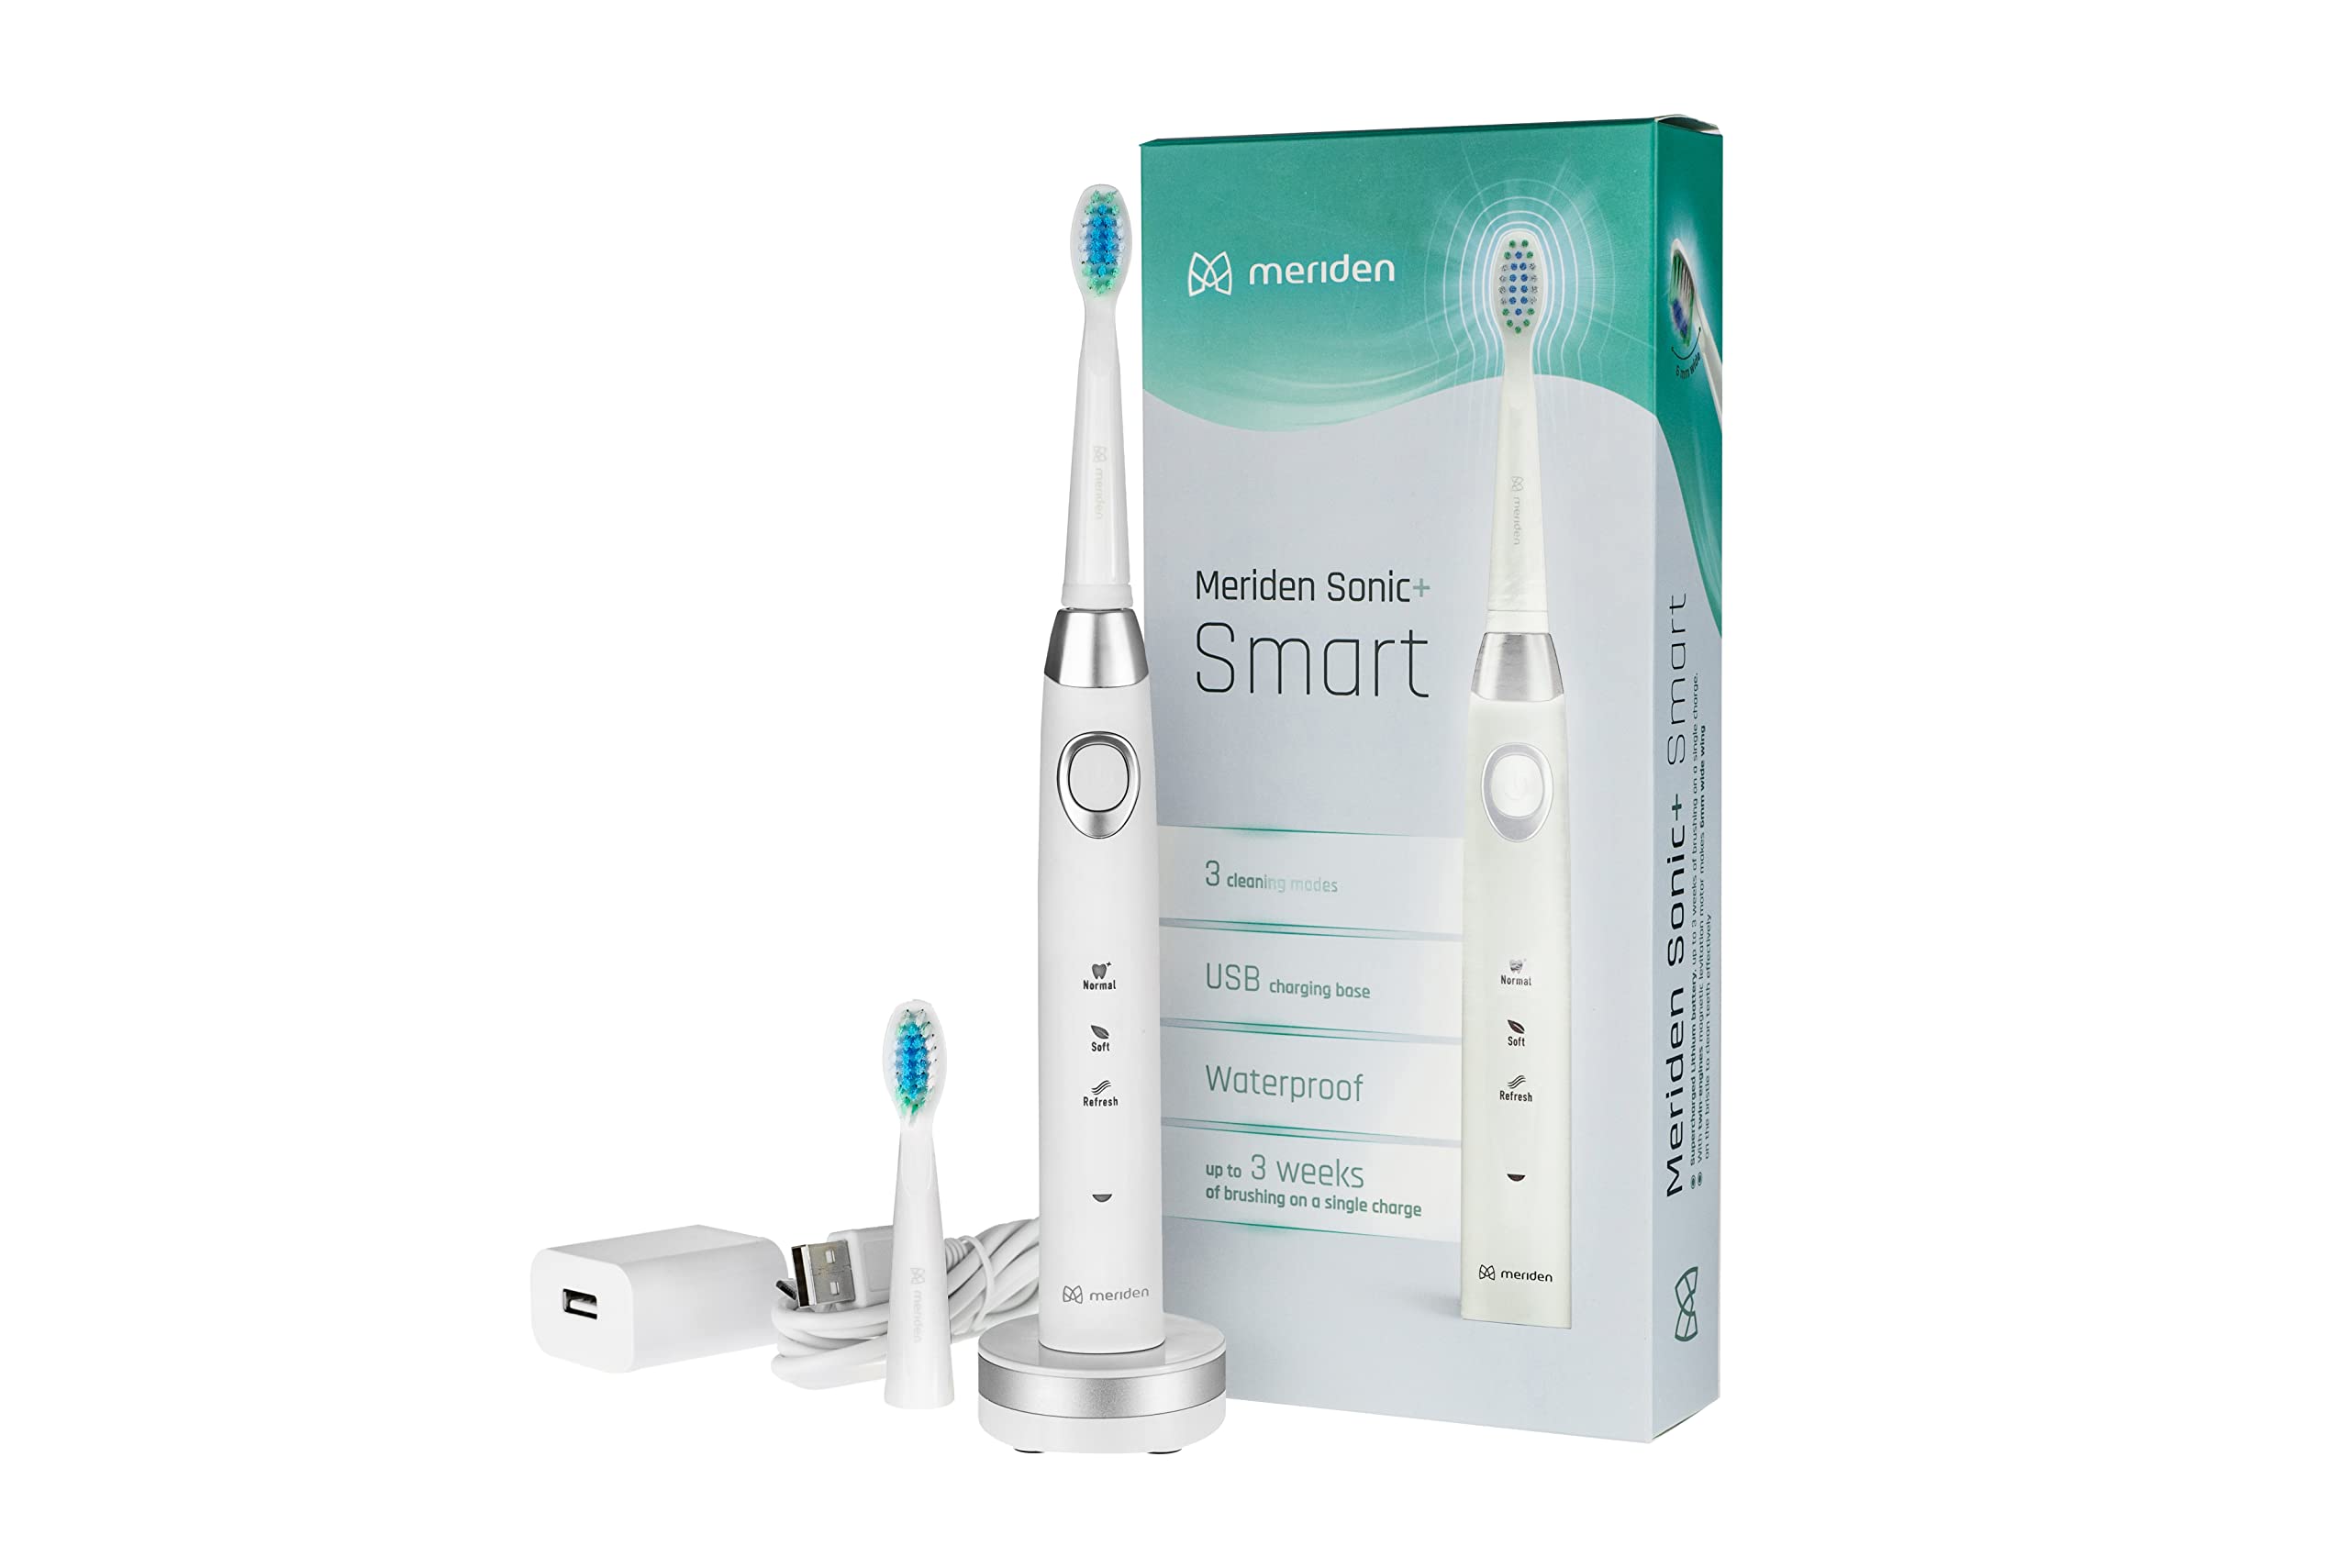 Meriden Schallzahnbürste Zahnbürste Sonic Reisezahnbürste mit Zahnbürstenhalter Smart 2x Aufsätze, 3 Modi, Timer USB Kabel EU Adapter weiß